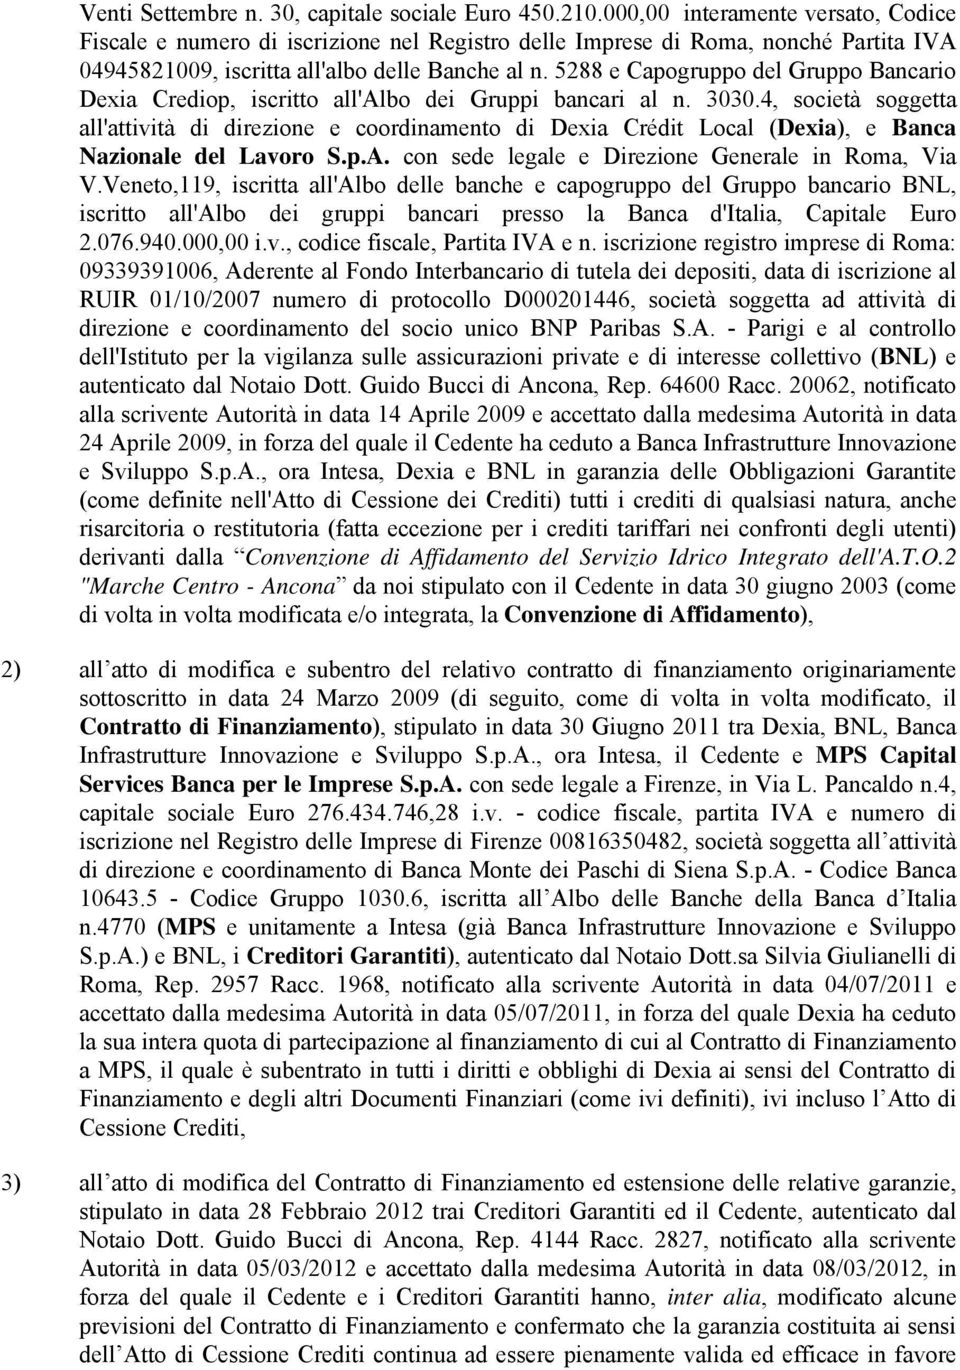 5288 e Capogruppo del Gruppo Bancario Dexia Crediop, iscritto all'albo dei Gruppi bancari al n. 3030.